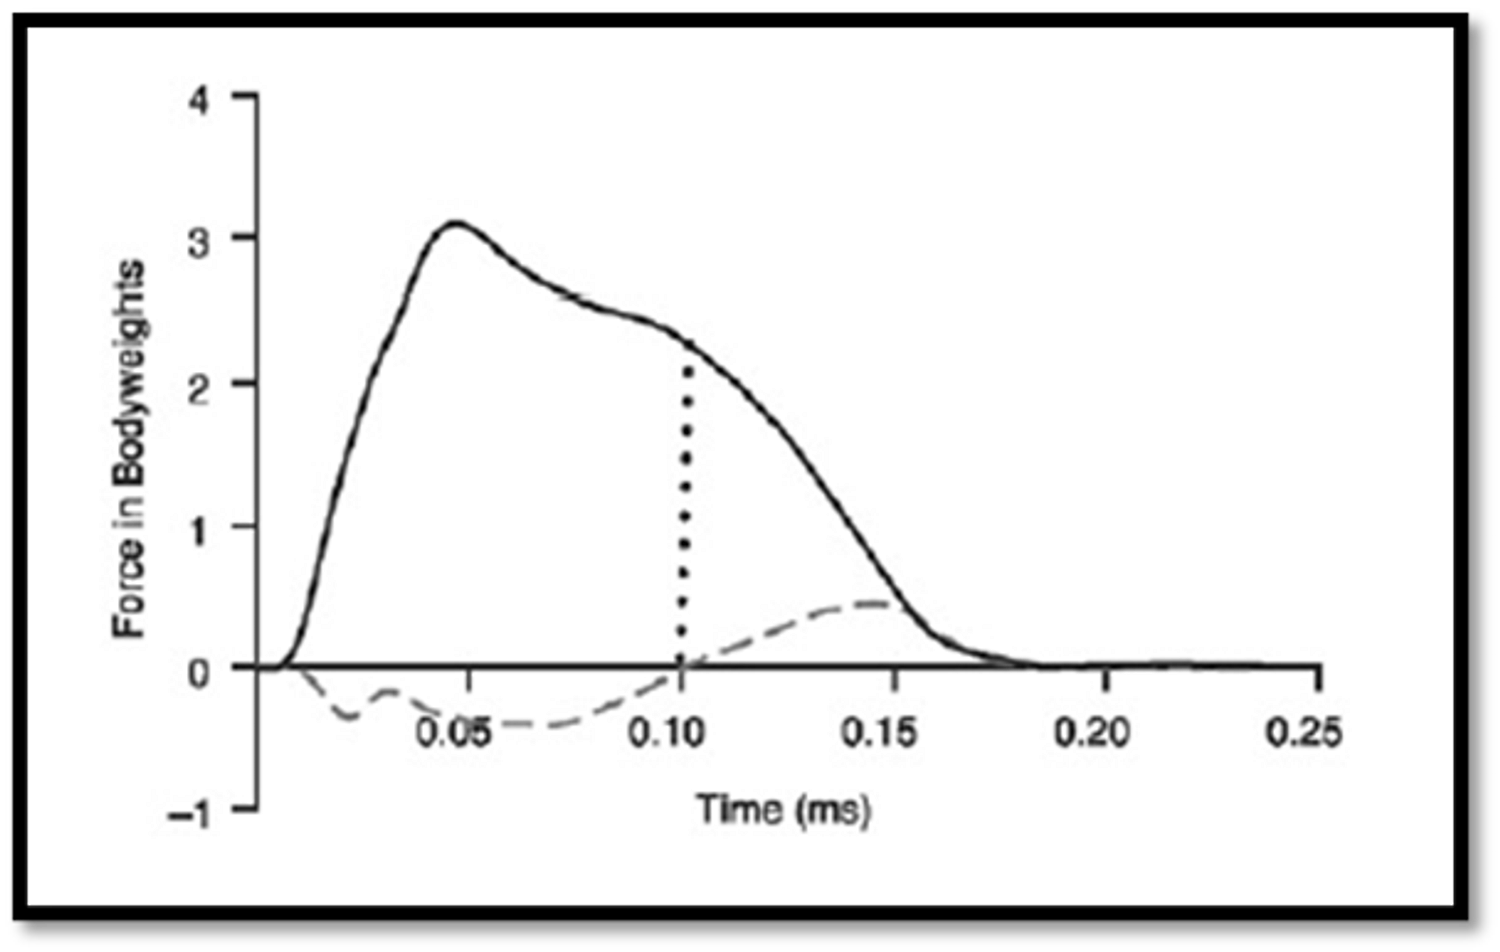 Figura 1. Curva fuerza-tiempo de la fase de Plant durante un COD de 45º. La línea vertical de puntos representa el cambio de fase de frenada a aceleración por el cambio de fuerzas (en línea discontinua) anteriores y posteriores. Extraída de Turner & Comfort (2017) [1].